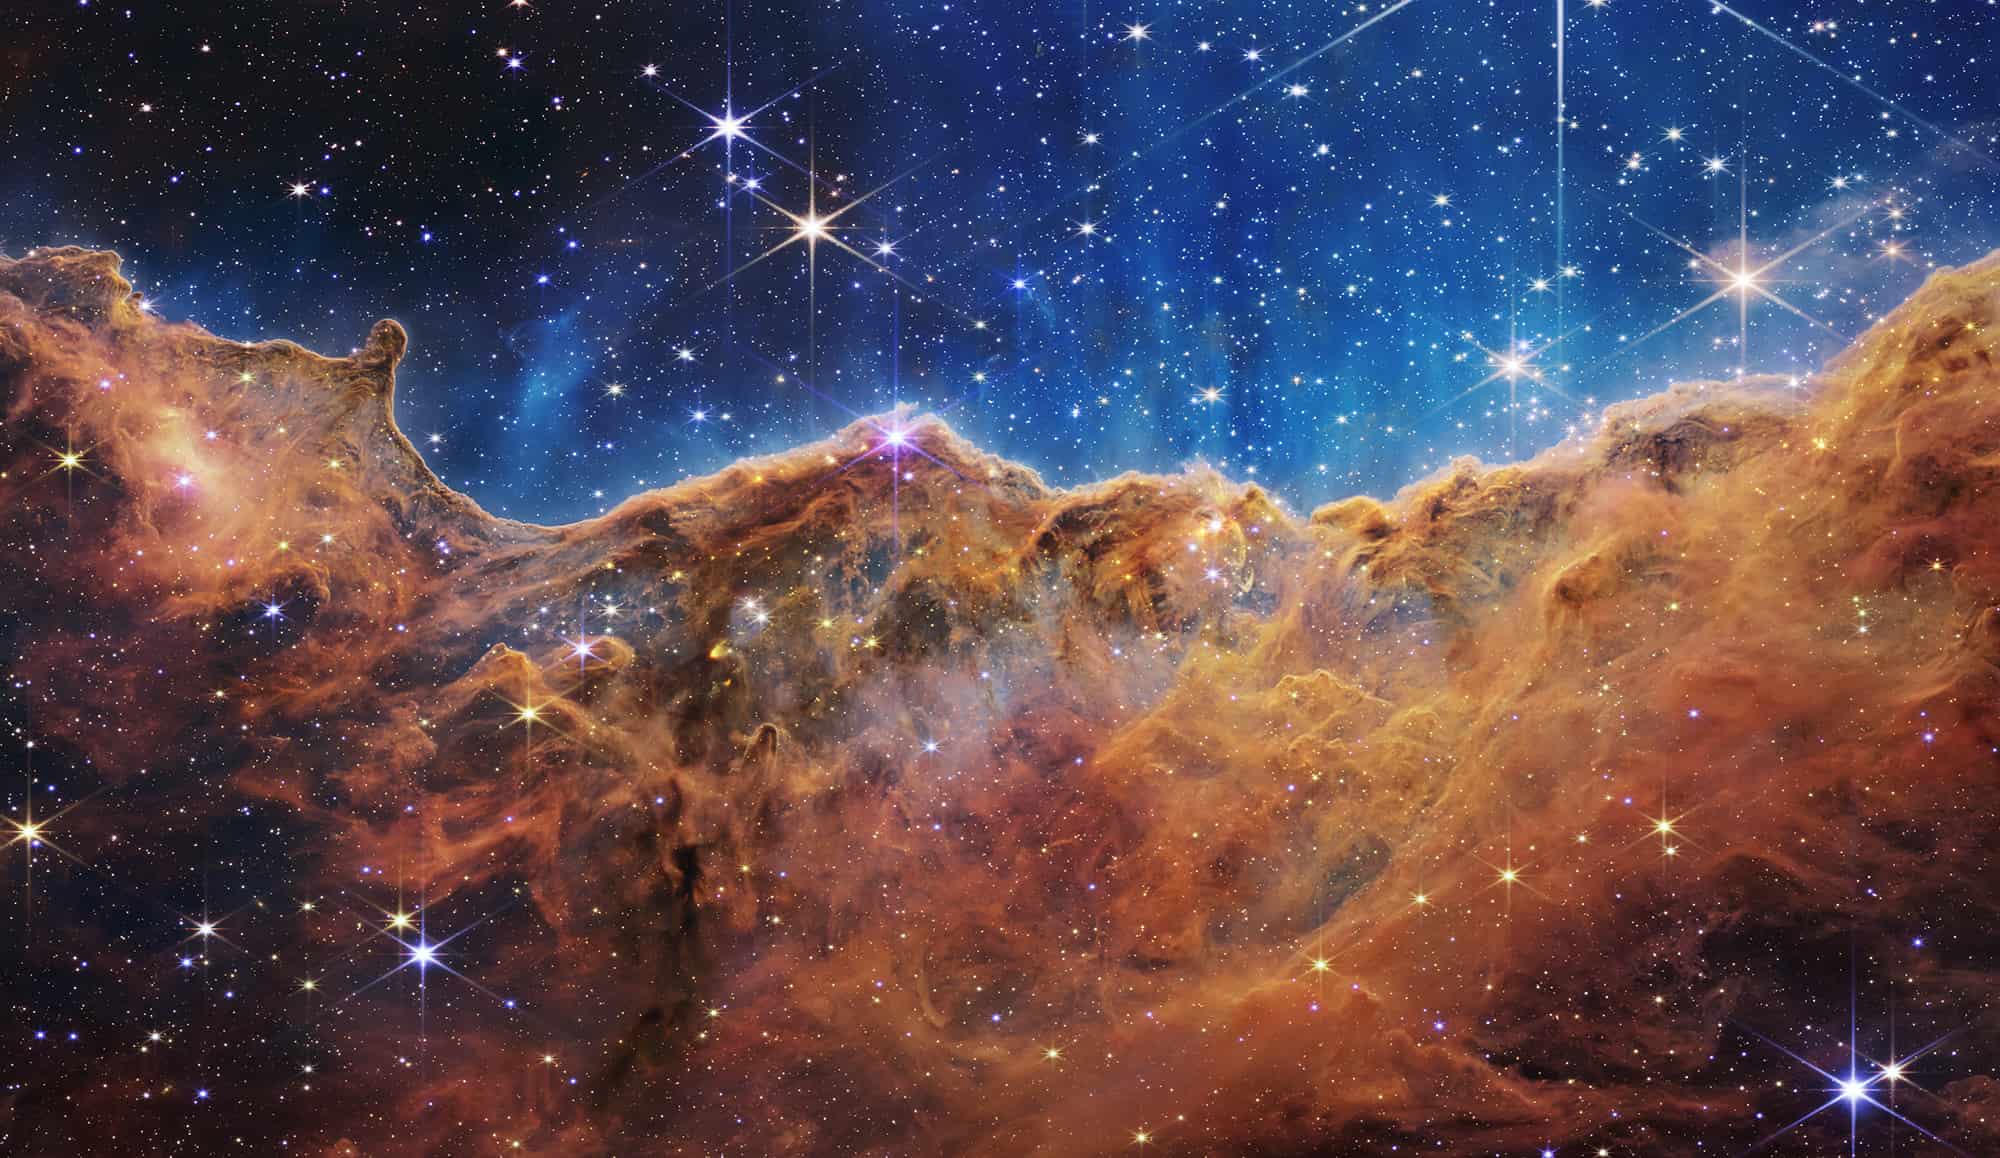 Telescopio James Webb nos regala postales del universo en todo su esplendor